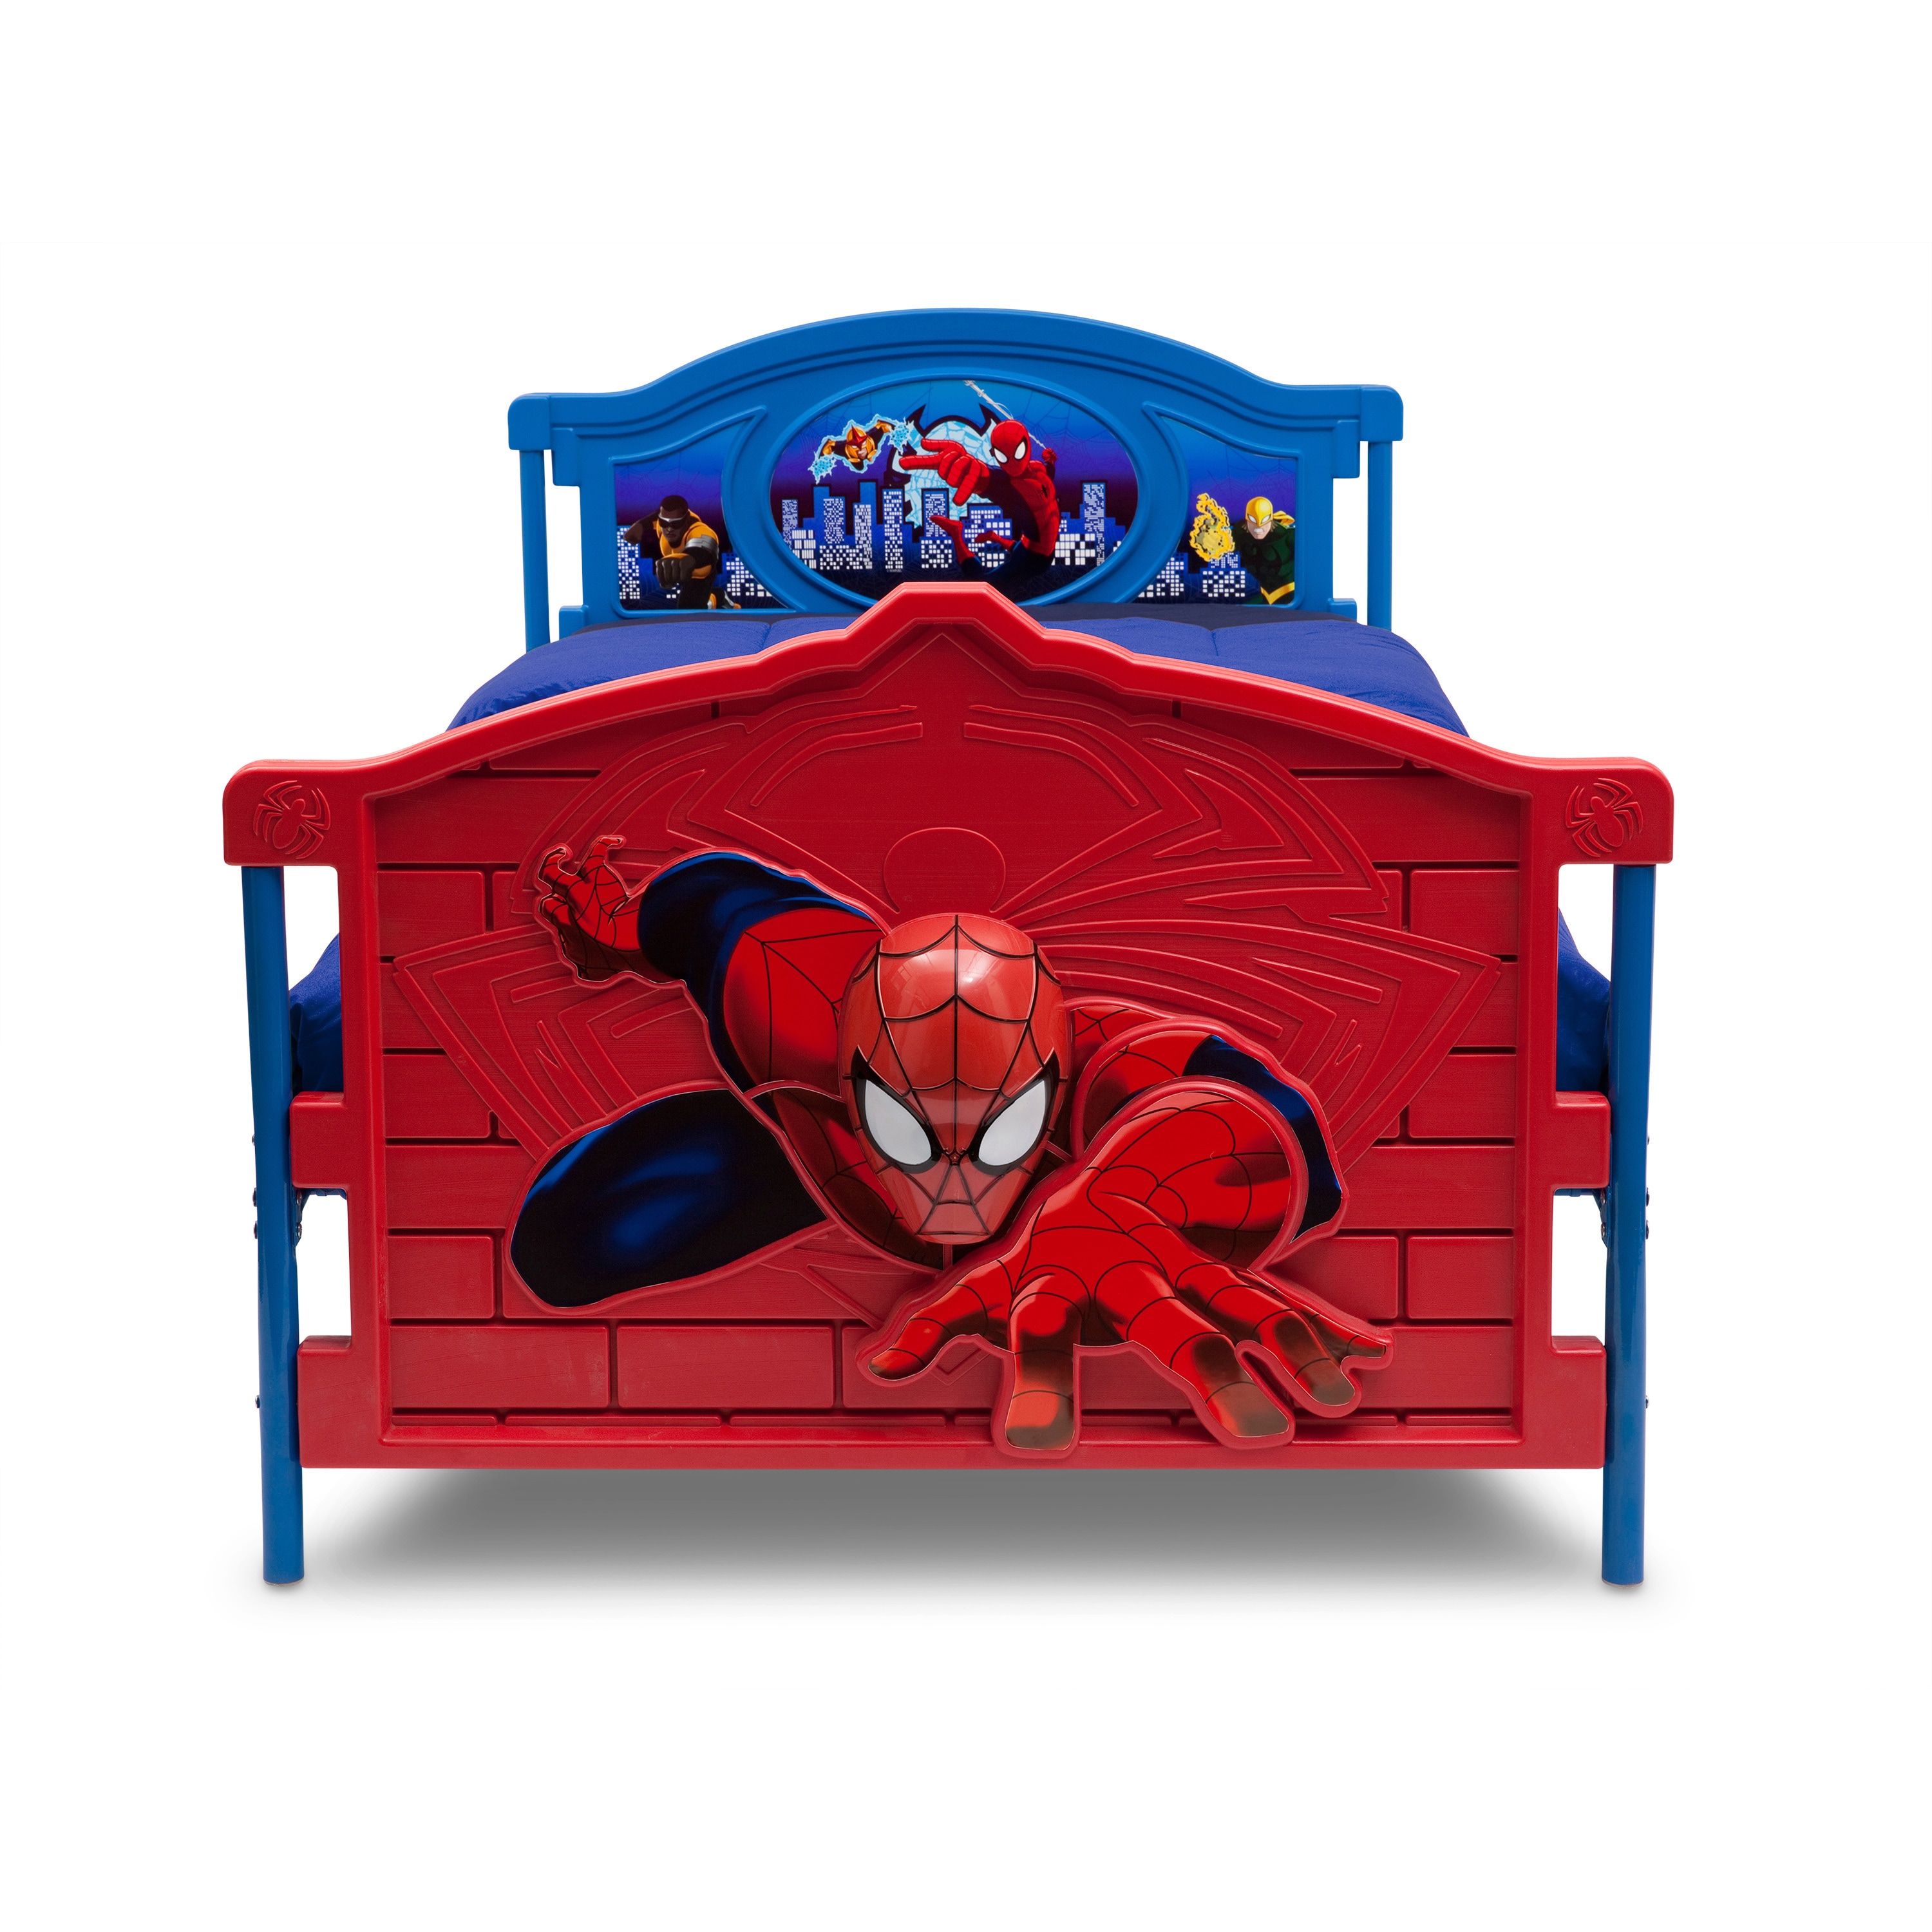 Delta Children Spider Man Chair Desk With Storage Bin Mar